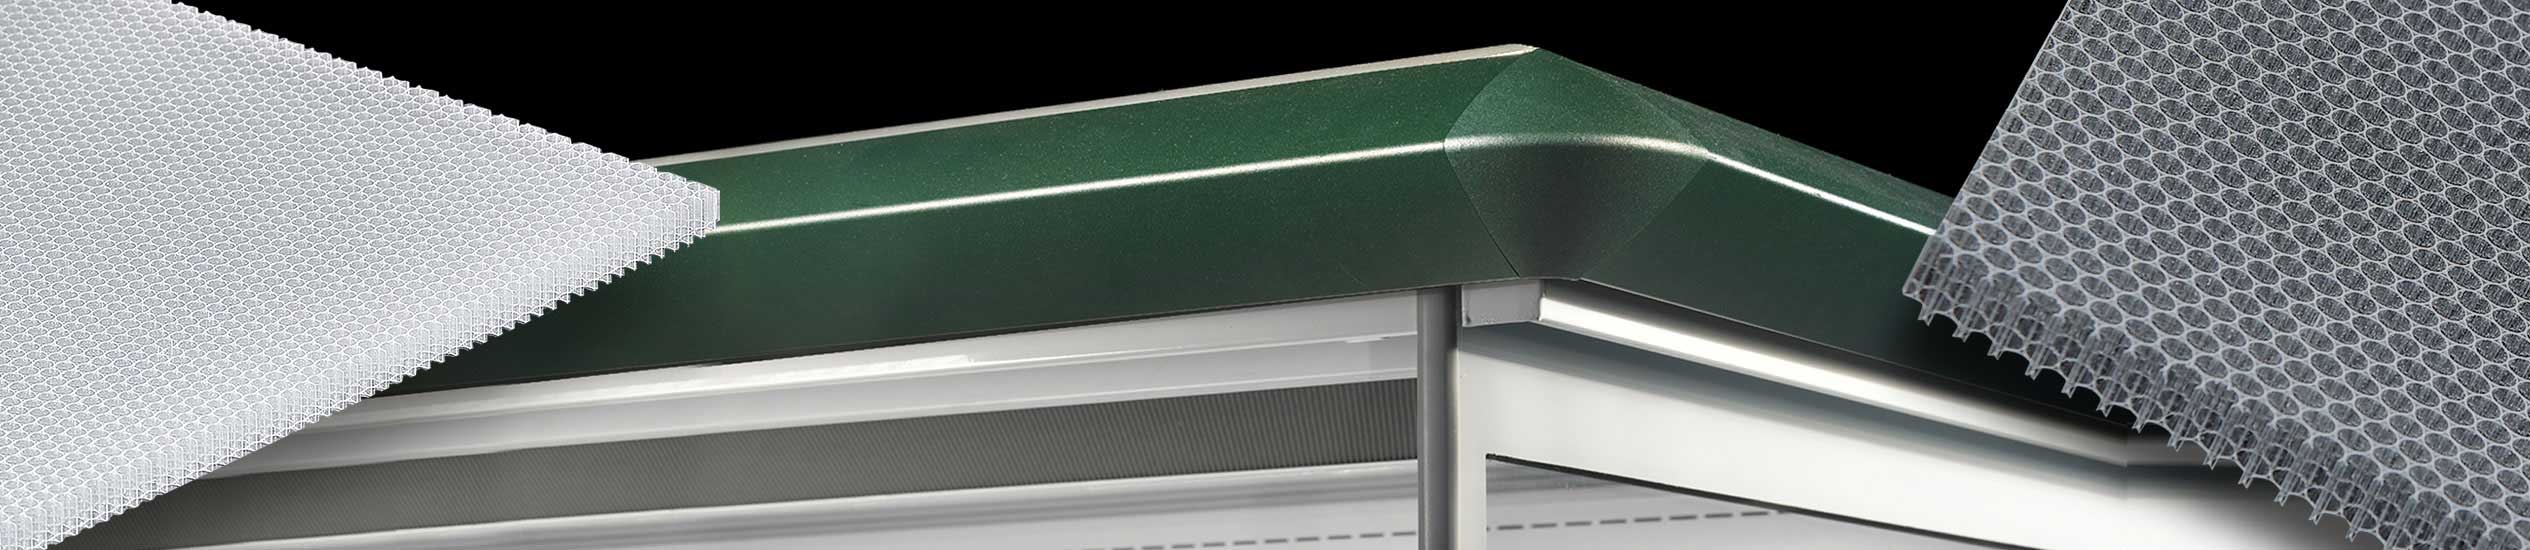 Плиты из сот для регулирования воздушного потока и увеличения эффективности производителей промышленных холодильников, вентиляционных систем и ветряных галерей